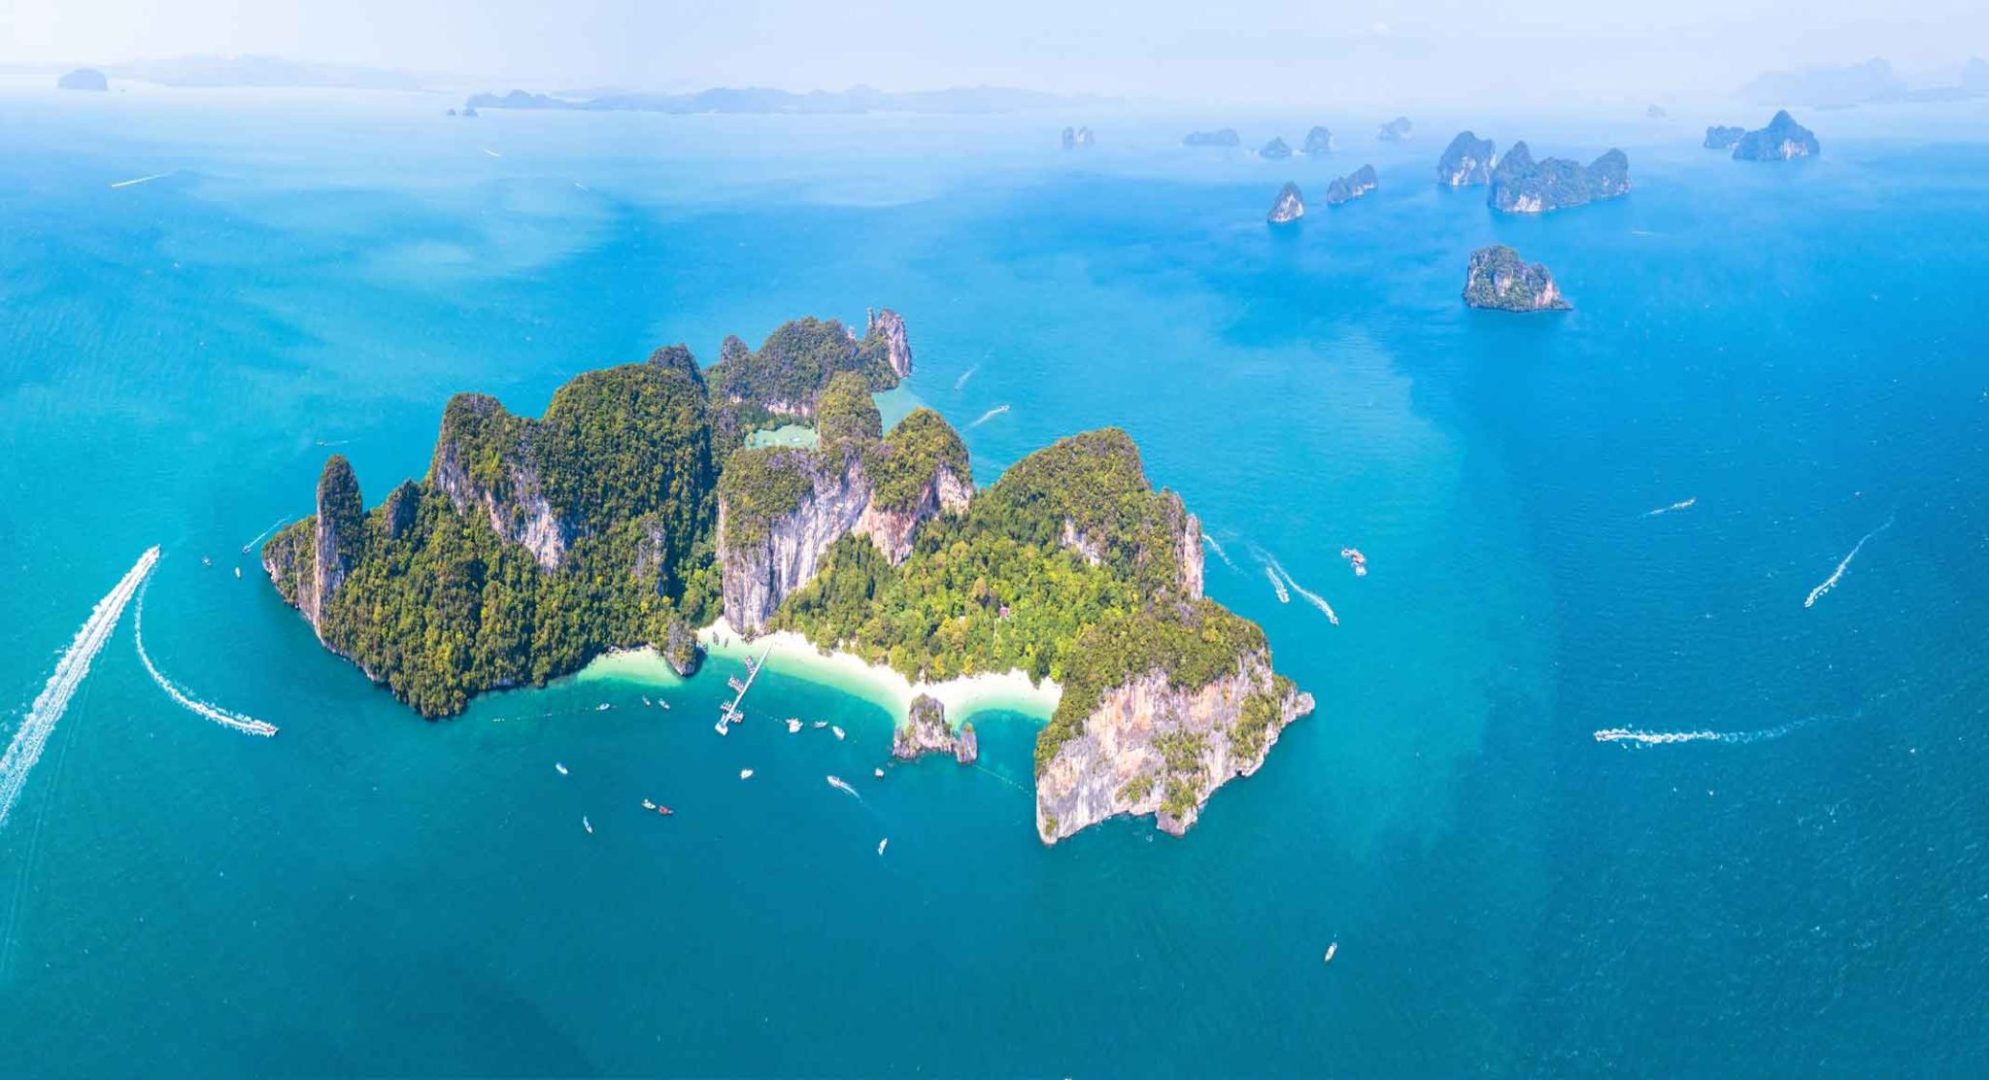 Hong Krabi Island - Best islands around Phuket Thailand to explore today